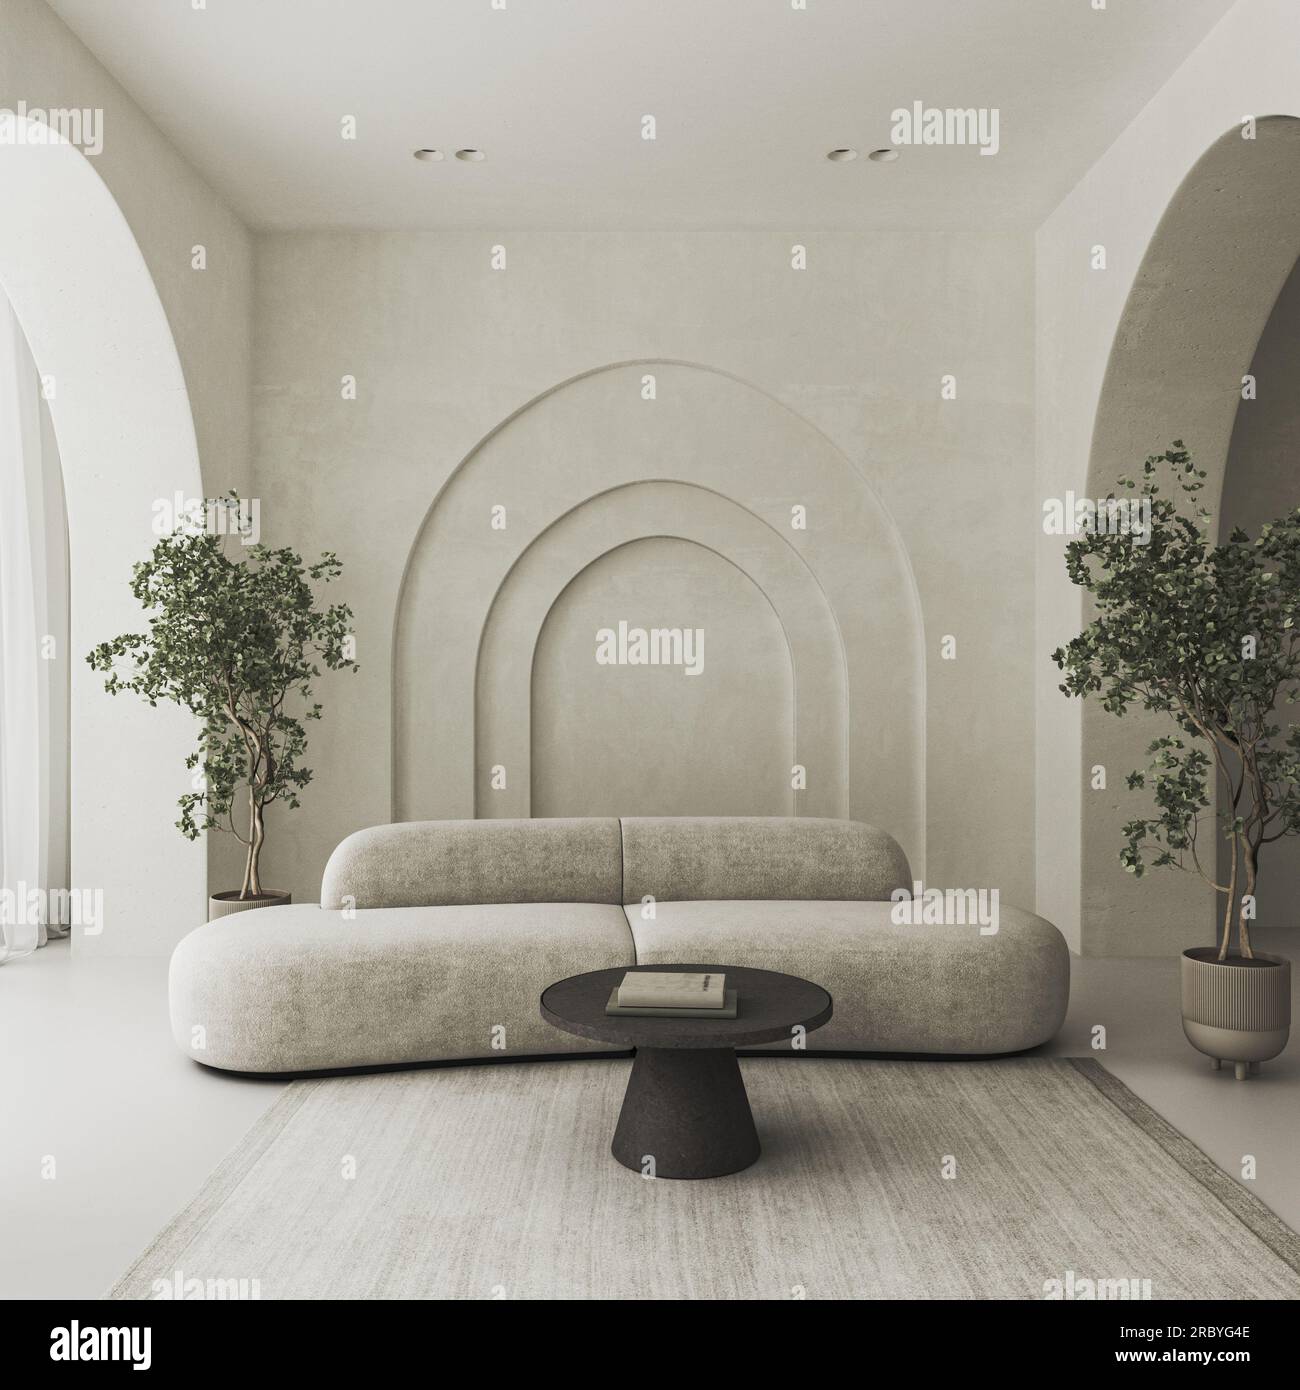 Chambre intérieure conceptuelle avec mur en stuc voûté. Canapé de composition créative avec arche en couleur pastel. Maquette arrière-plan vide. rendu 3d. Elevé Banque D'Images